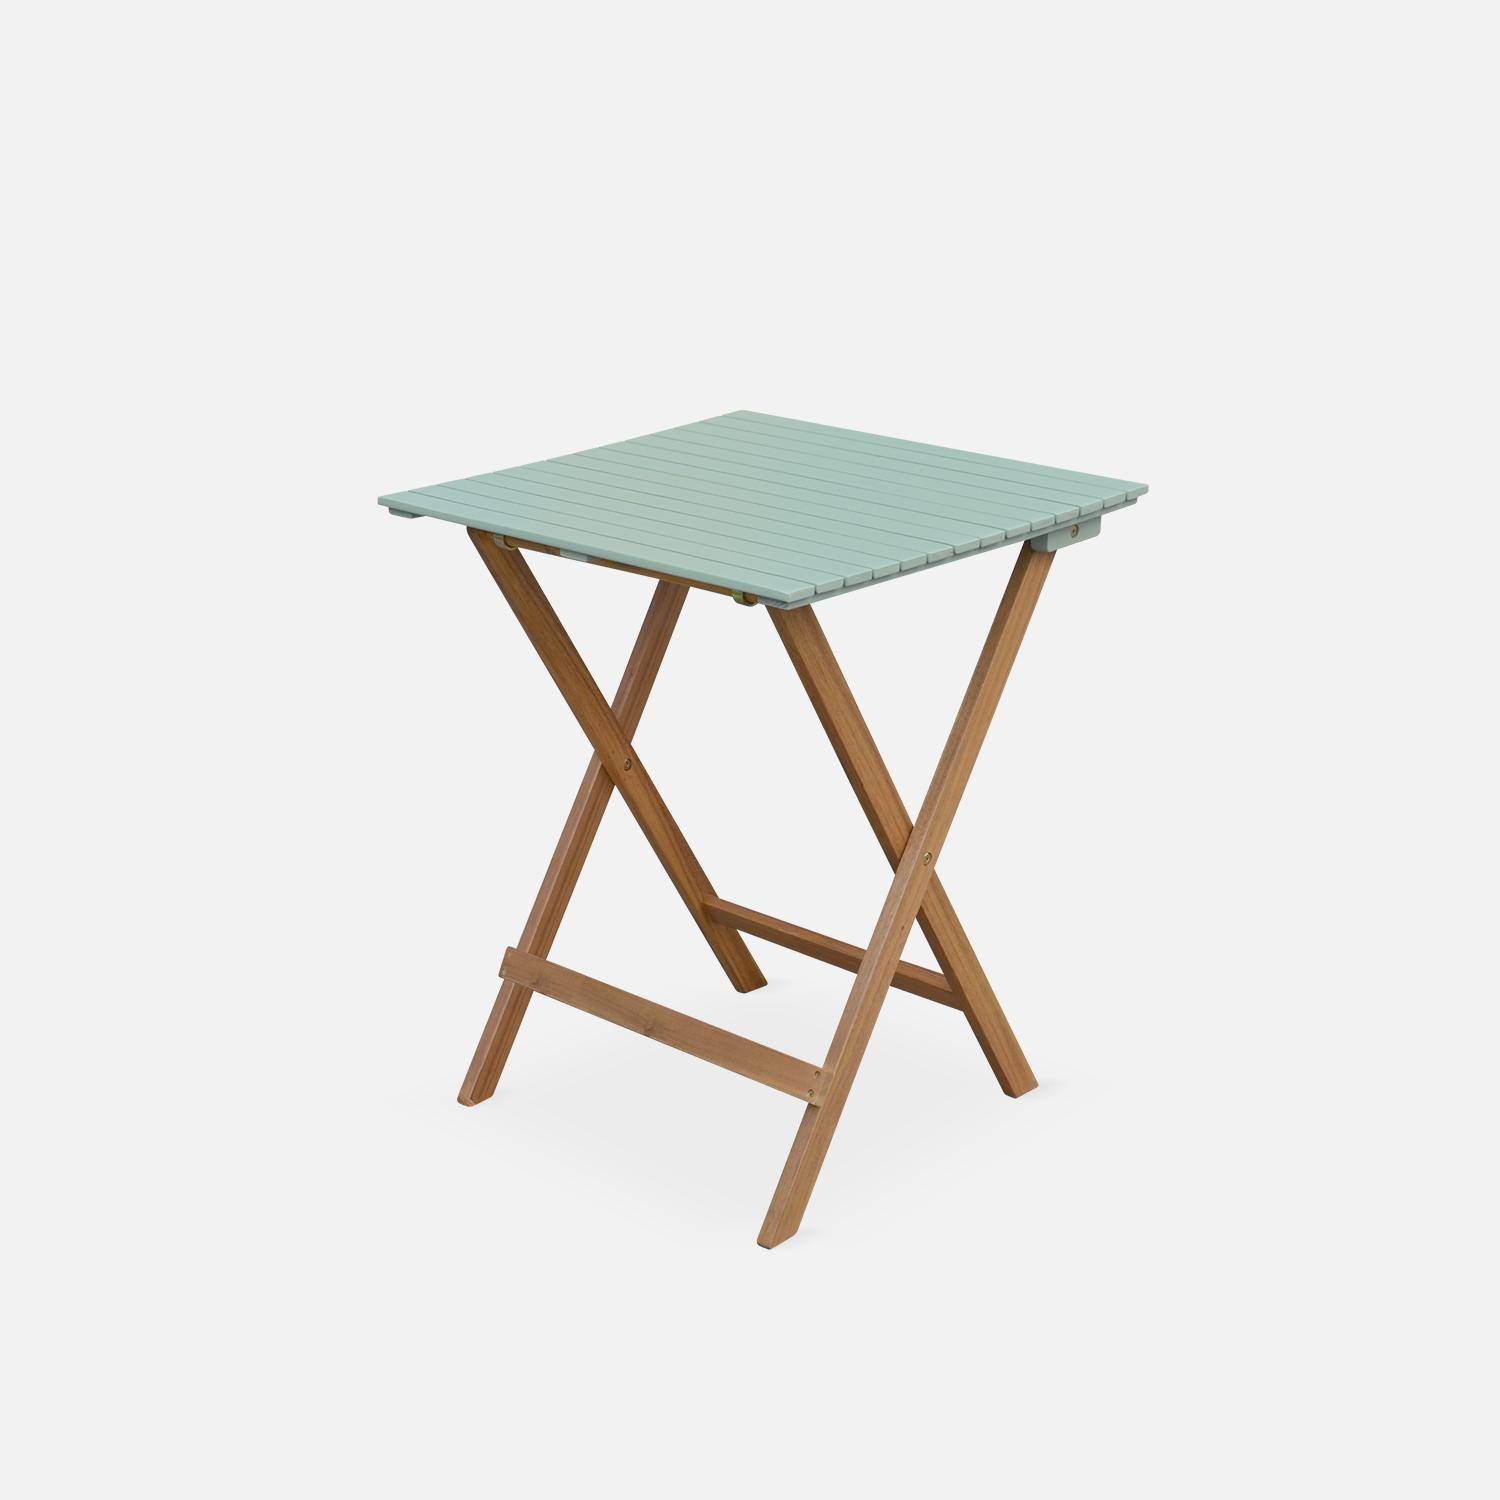 Conjunto de jardín de madera Bistro 60x60cm - Barcelona - verde grisáceo, mesa plegable bicolor con 2 sillas plegables, acacia,sweeek,Photo6